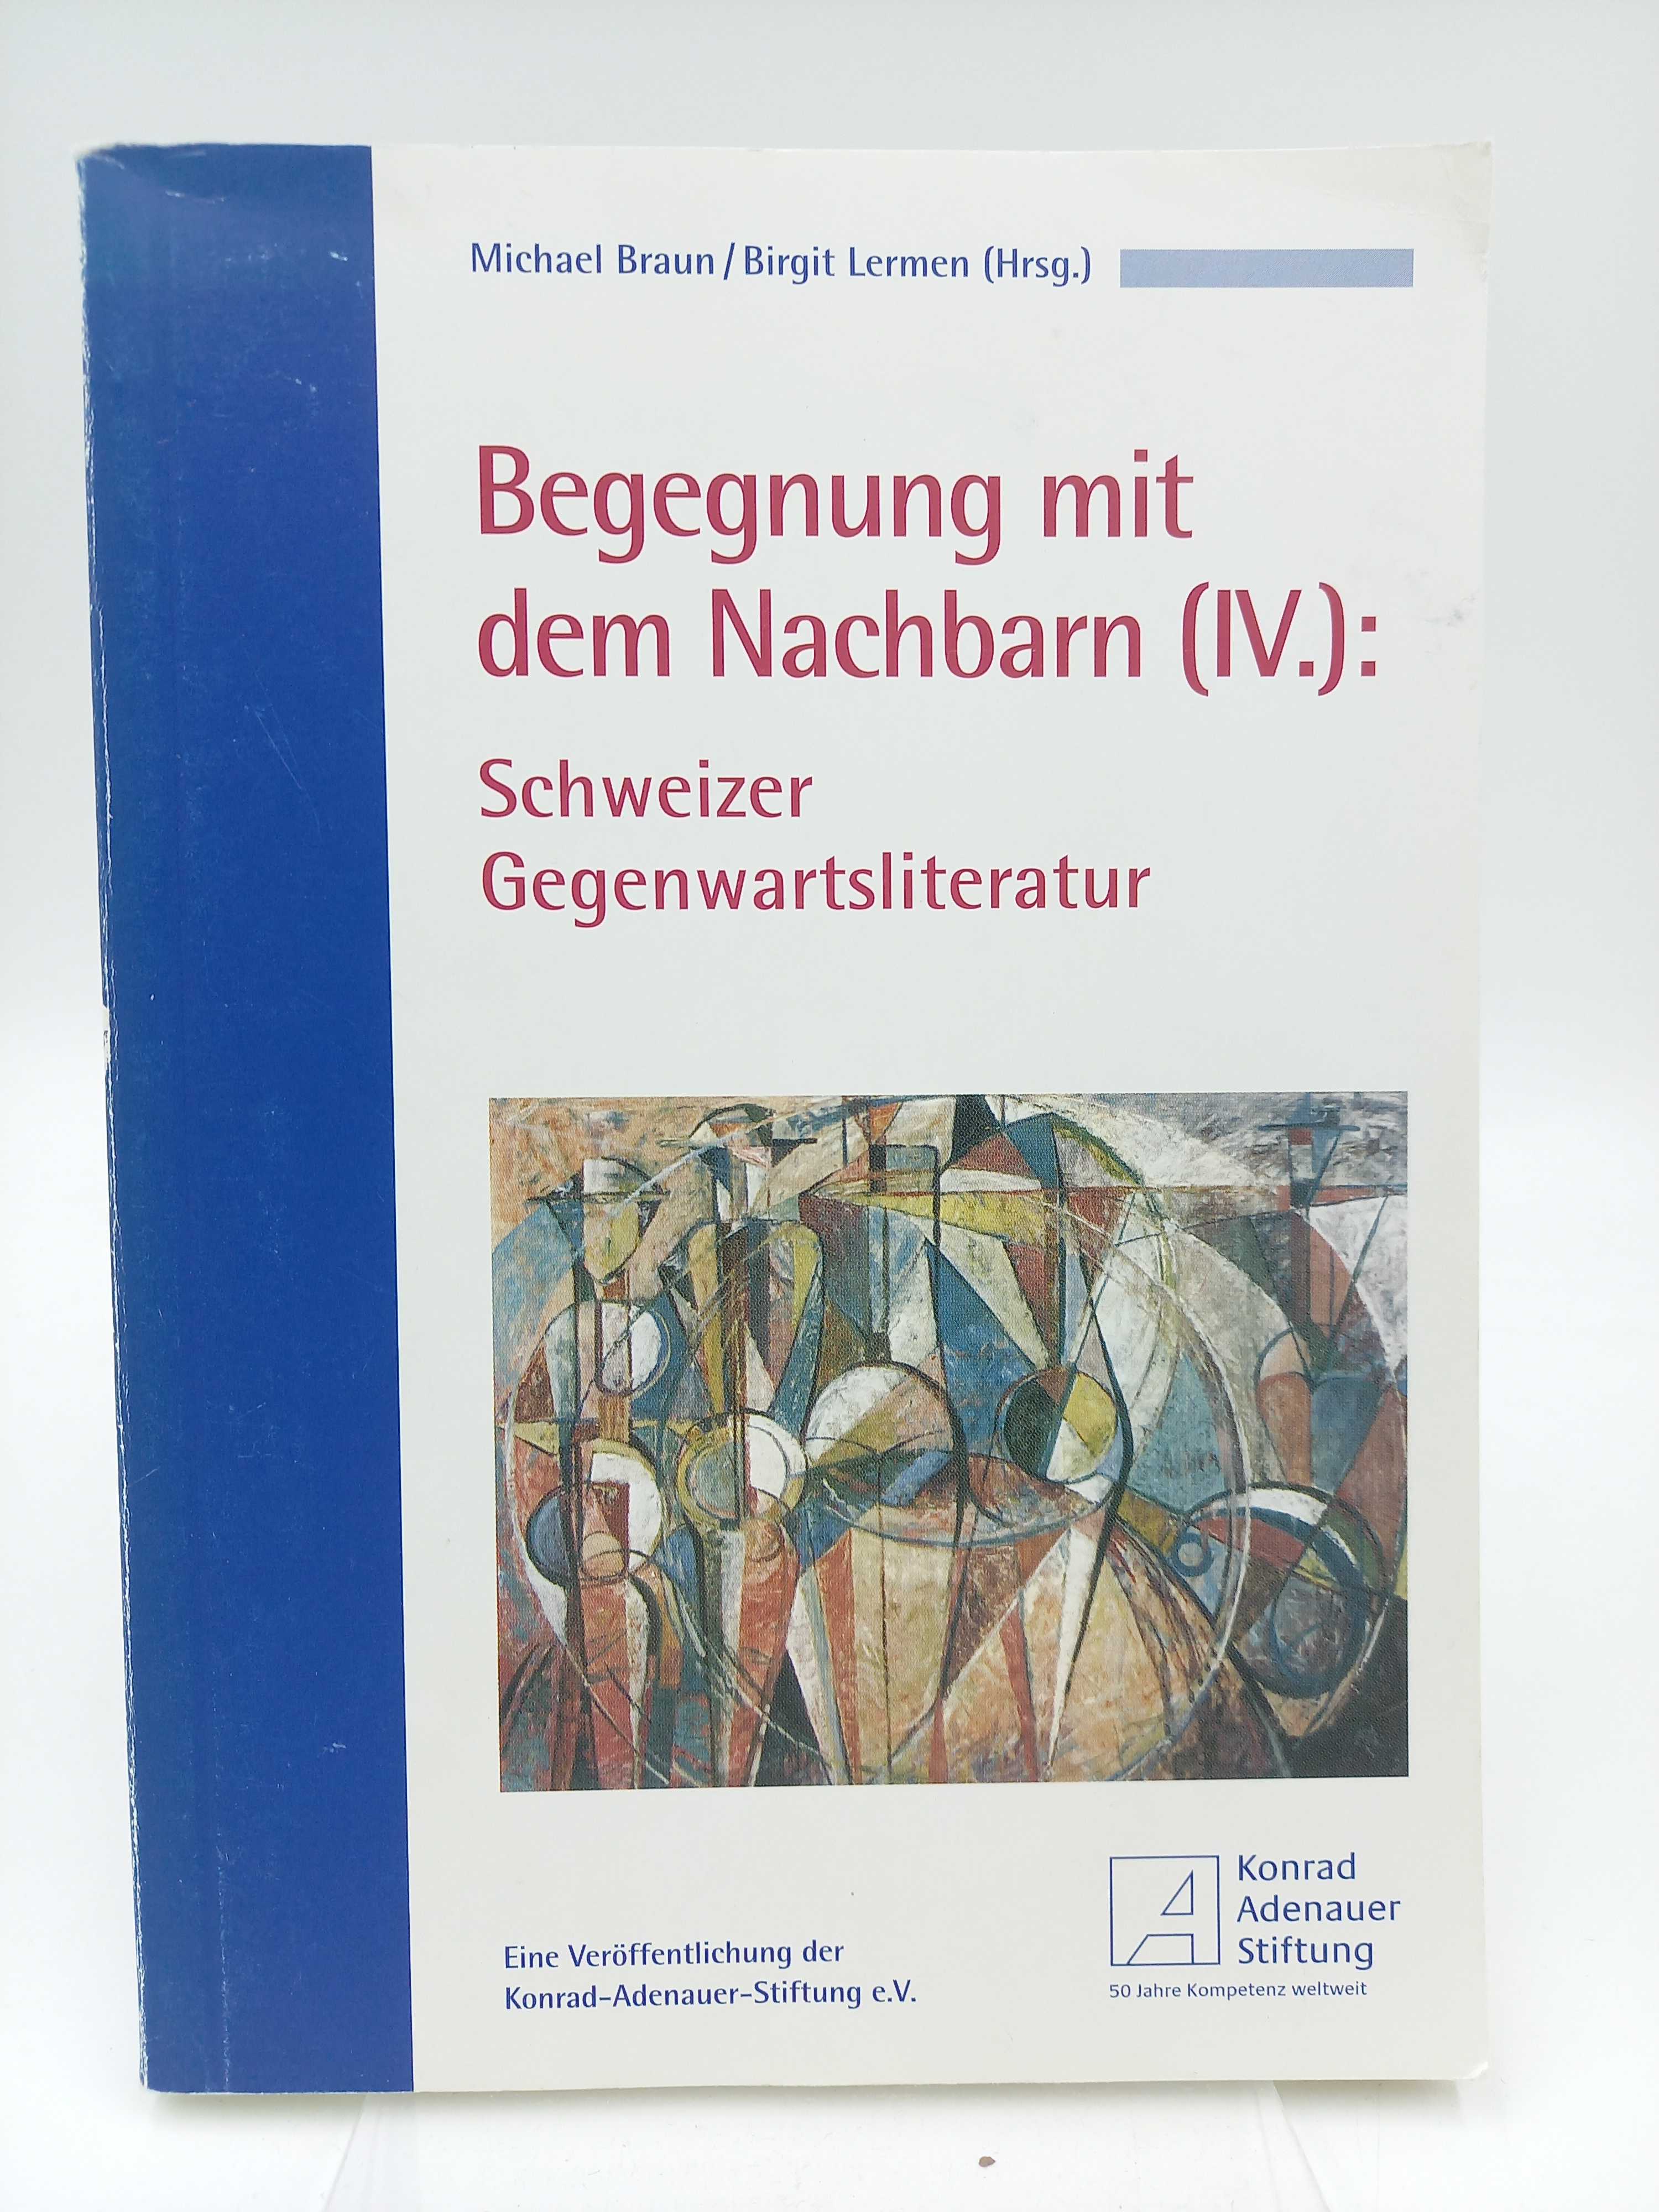 Begegnung mit dem Nachbarn IV: Schweizer Gegenwartsliteratur - Braun, Michael / Lermen, Birgit [Hrsg.] -